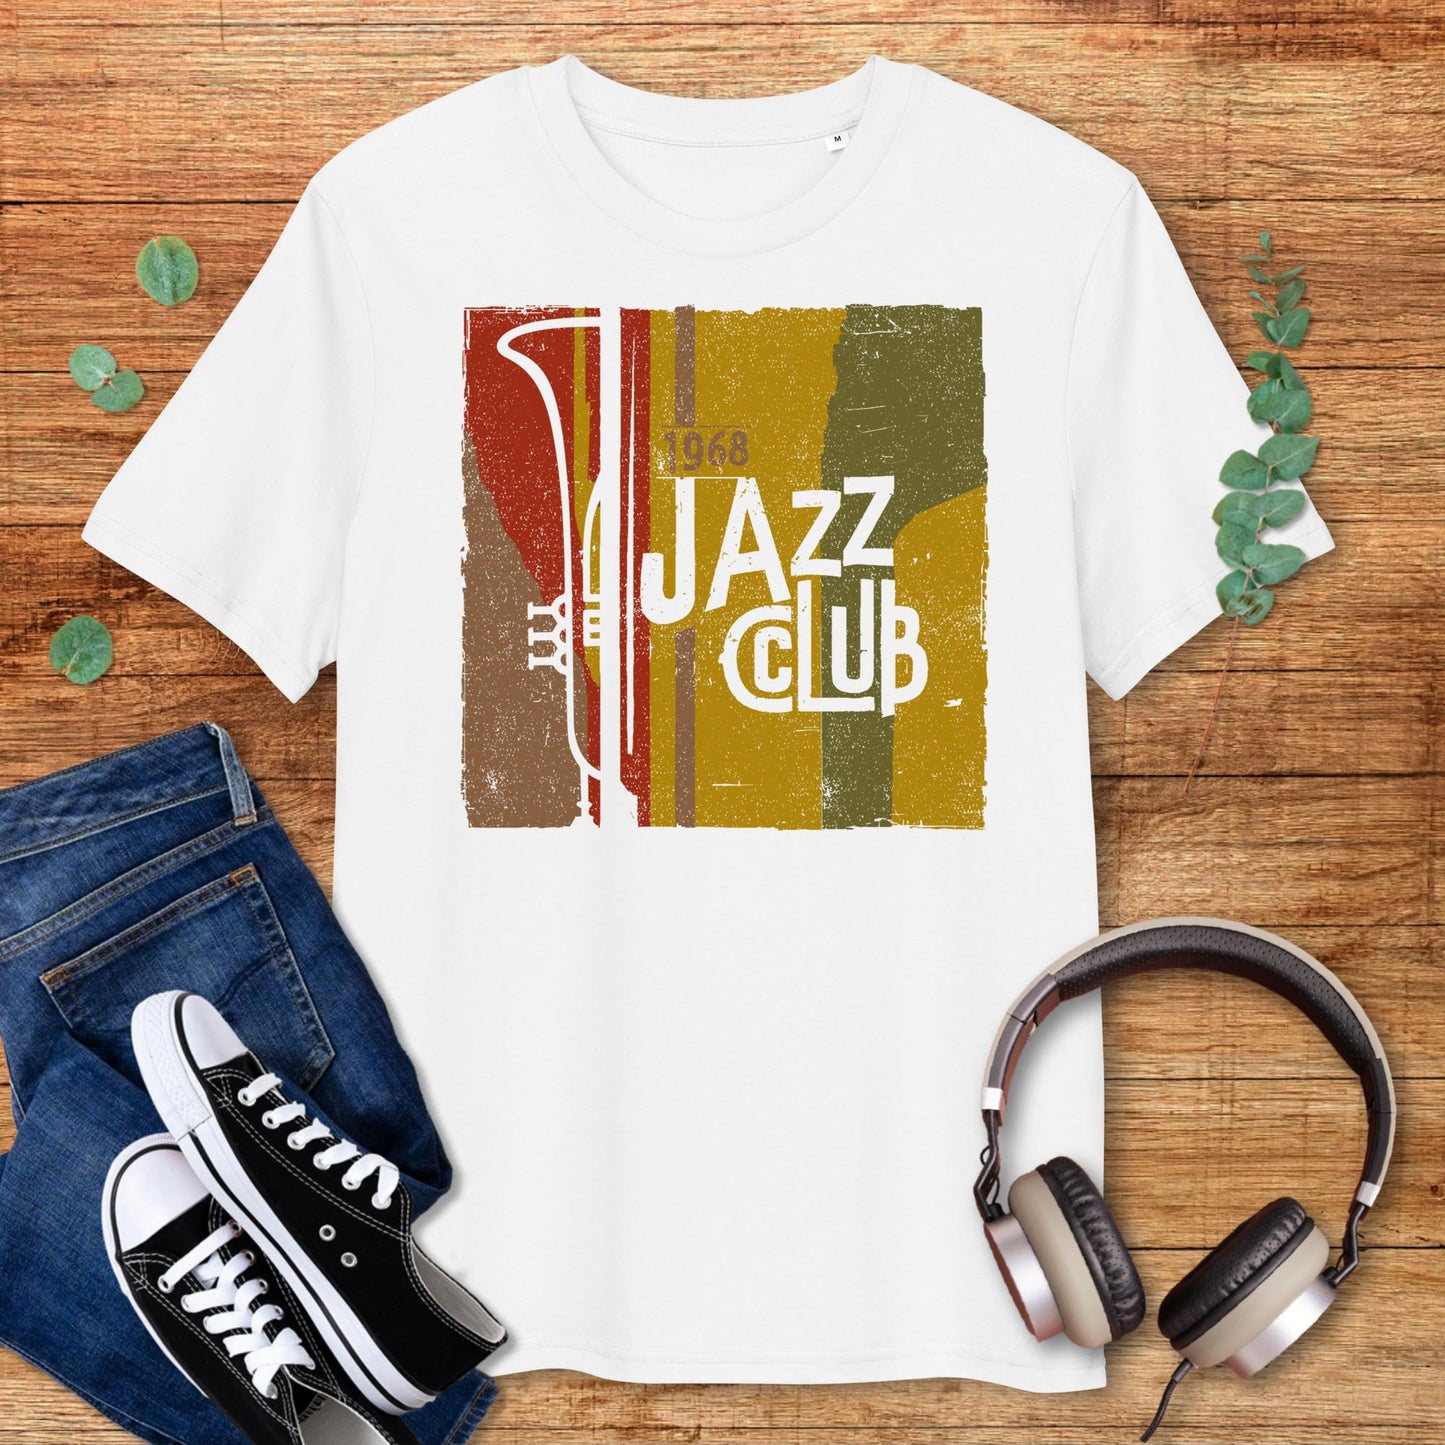 Jazz Club 1968